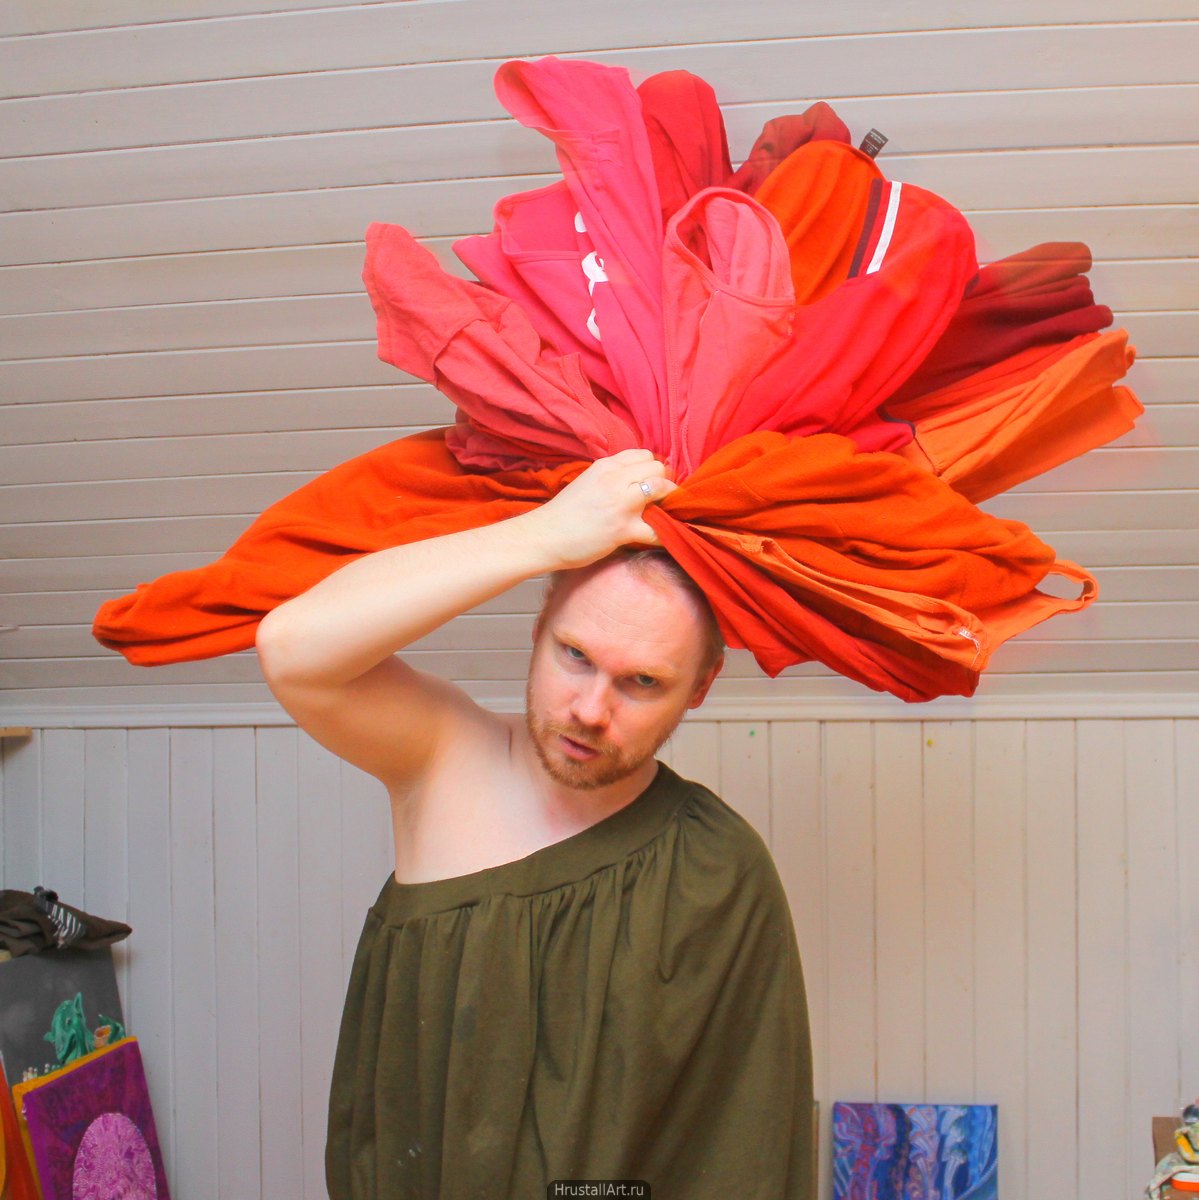 Парень с кипой красного белья на голове, изображает распустившийся цветок.